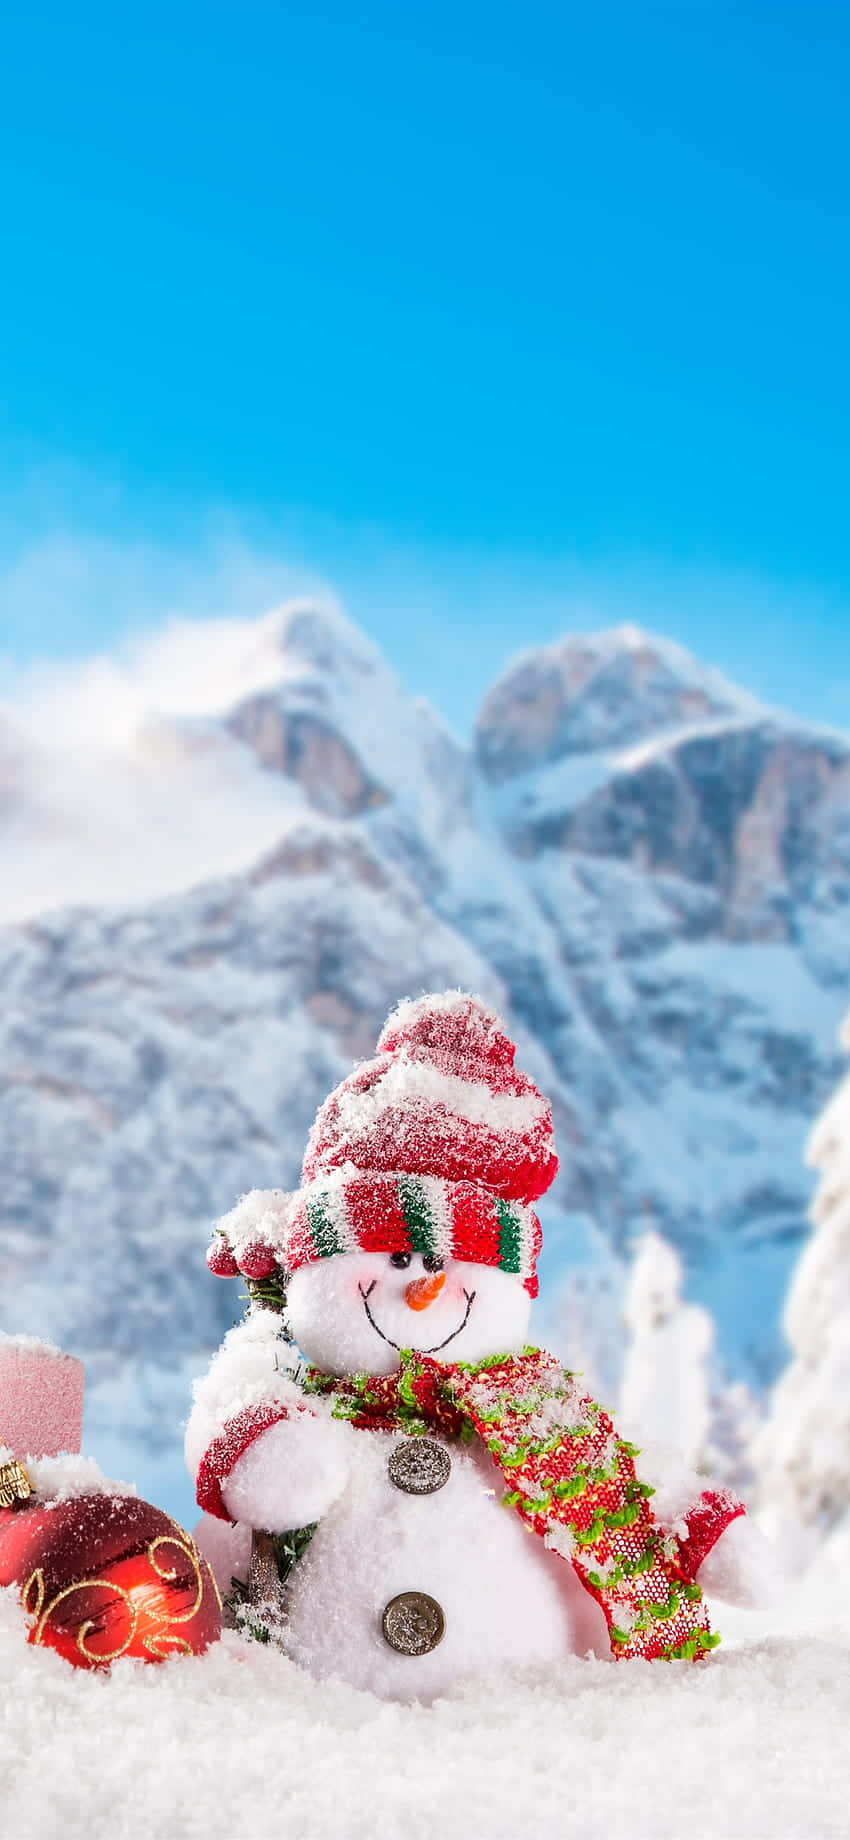 flakesEn sne mand I sneen med gaver og snefnug Wallpaper